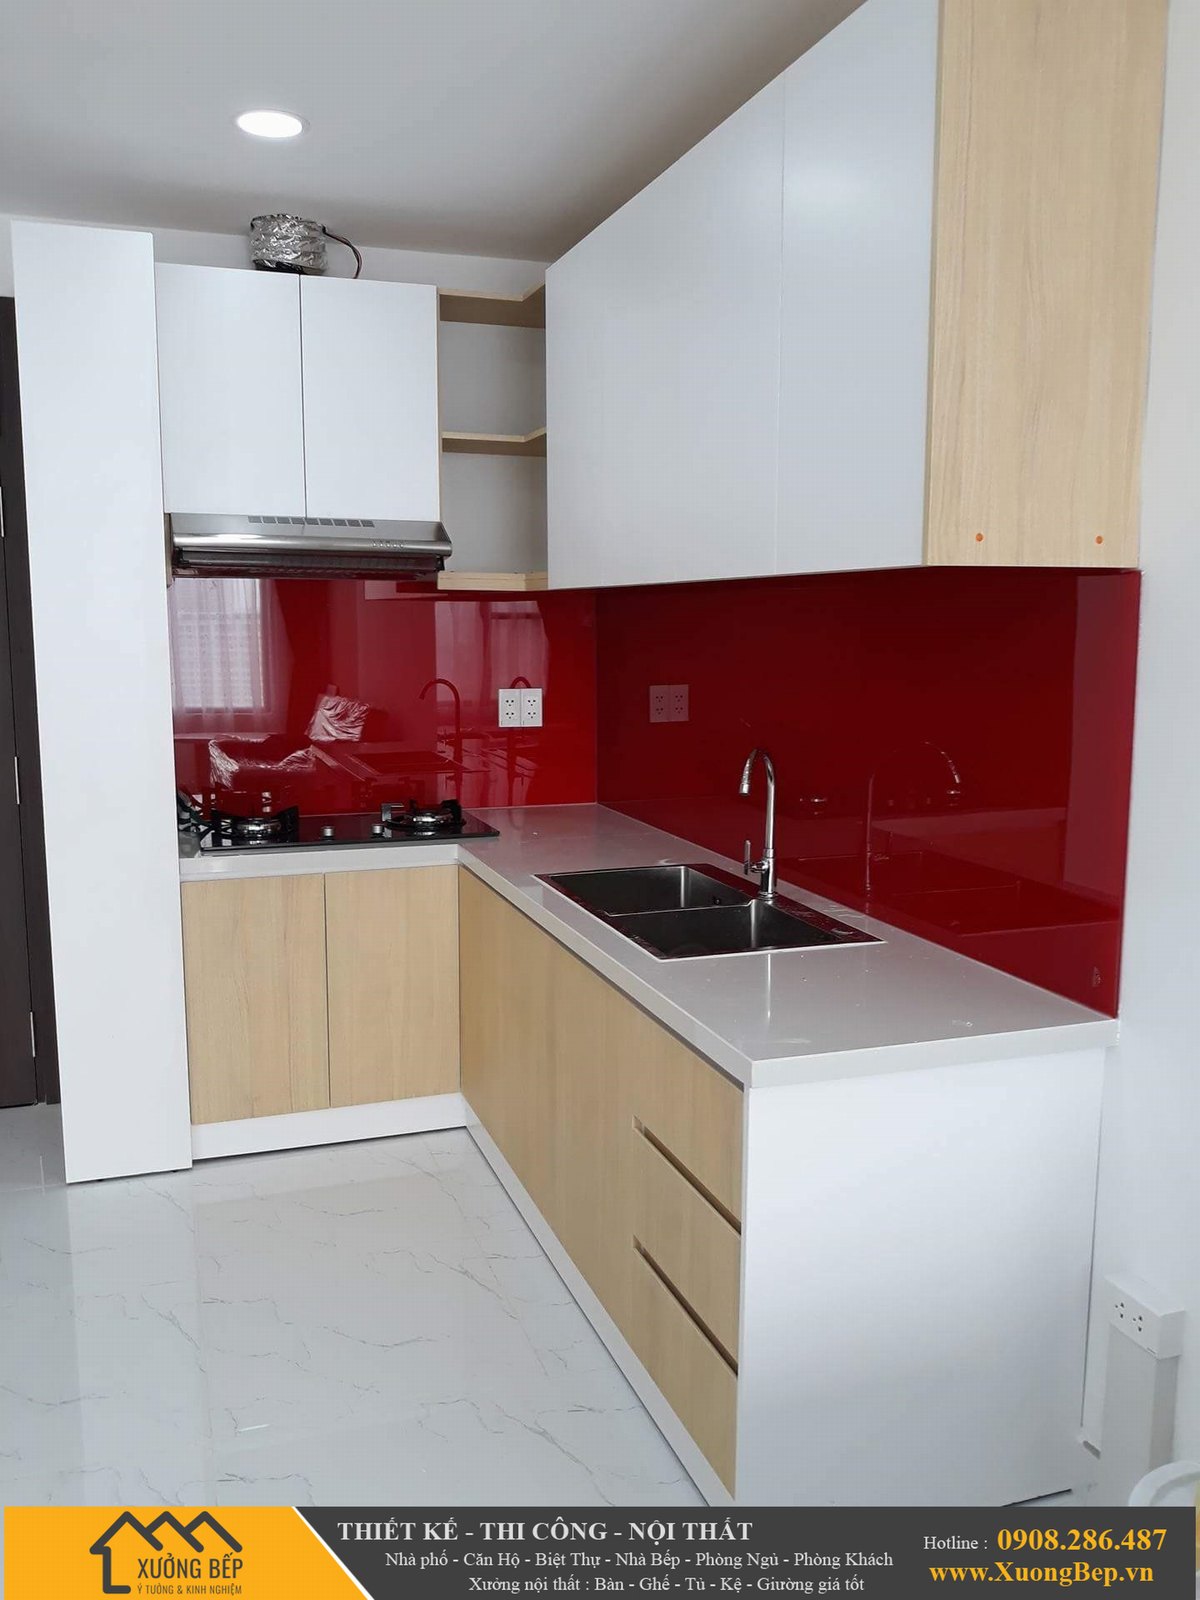 Báo giá thiết kế thi công nhà bếp tủ bếp tại TPHCM,Trà Vinh 222